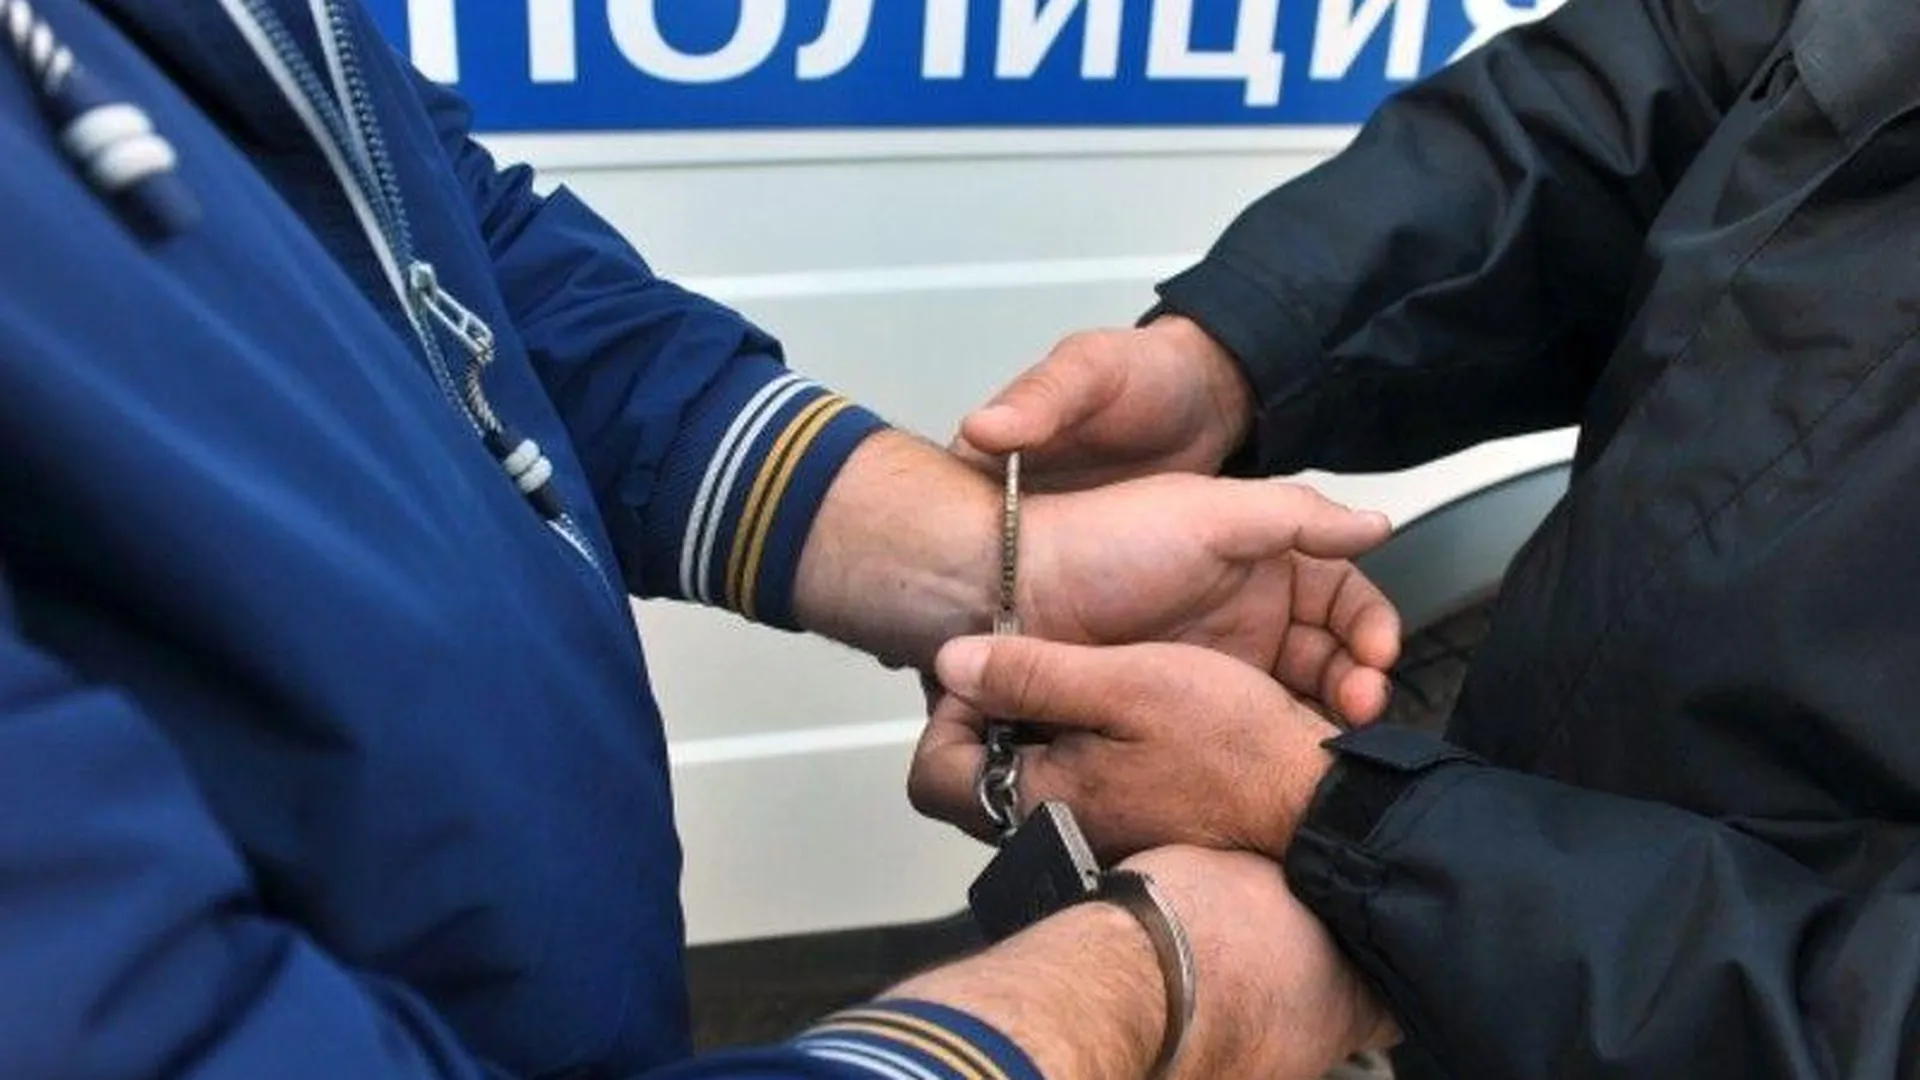 Мужчину, повредившего чужое имущество, задержали в Орехово-Зуево